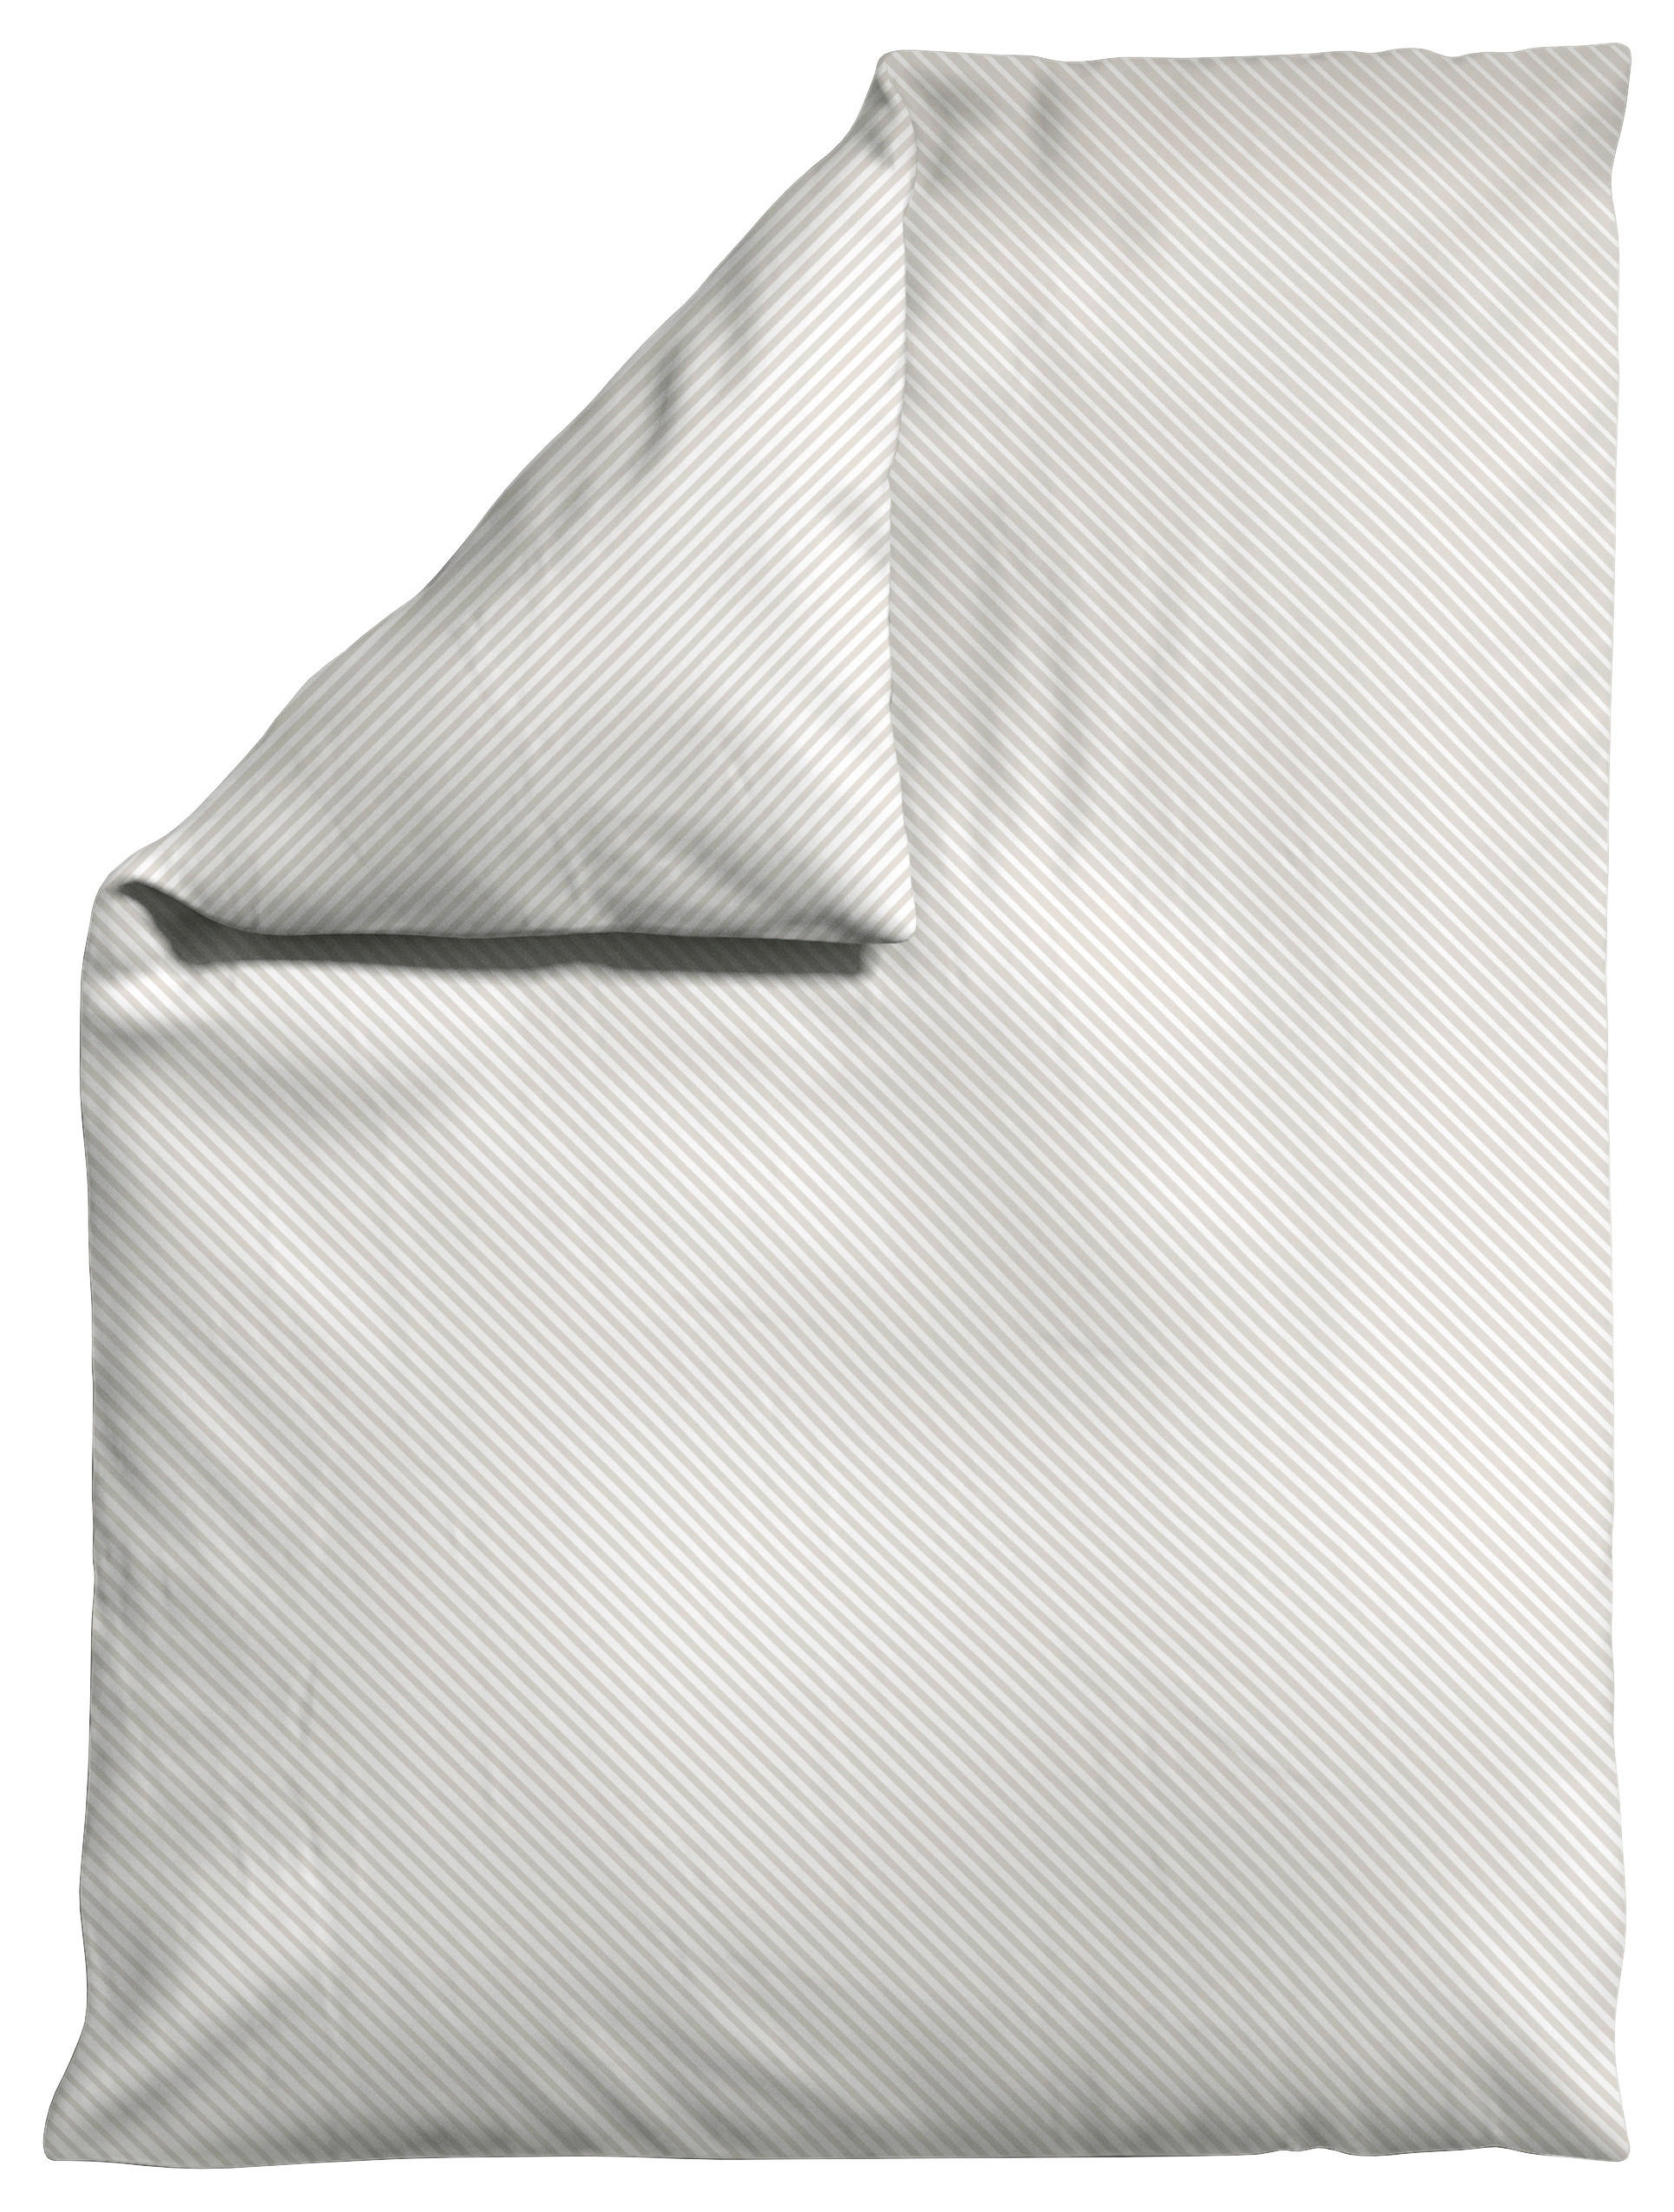 BETTDECKENBEZUG Woven Satin Fade Makosatin  - Taupe/Weiß, Basics, Textil (135-140/200cm) - Schlafgut